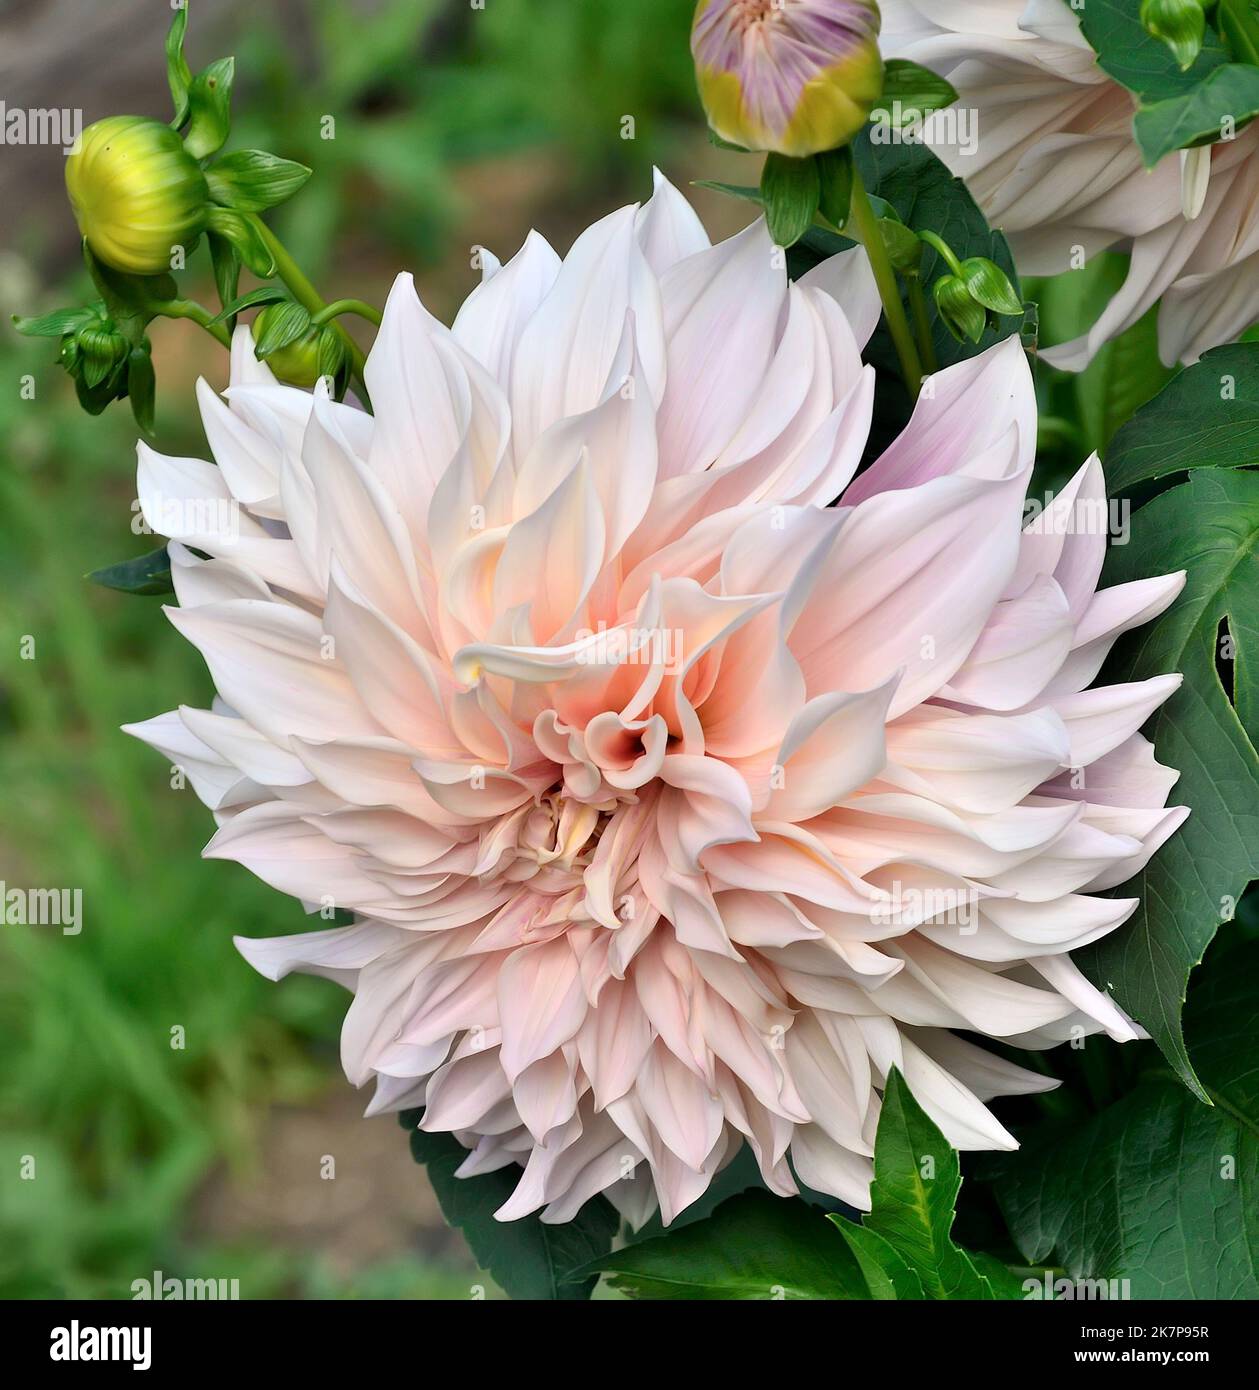 Increíble perfección de la variedad de flores de Dahlia Cafe au Lait creciendo en el jardín de verano de cerca. Decorativa color crema luz rosa dahlia flor, dinnerp Foto de stock